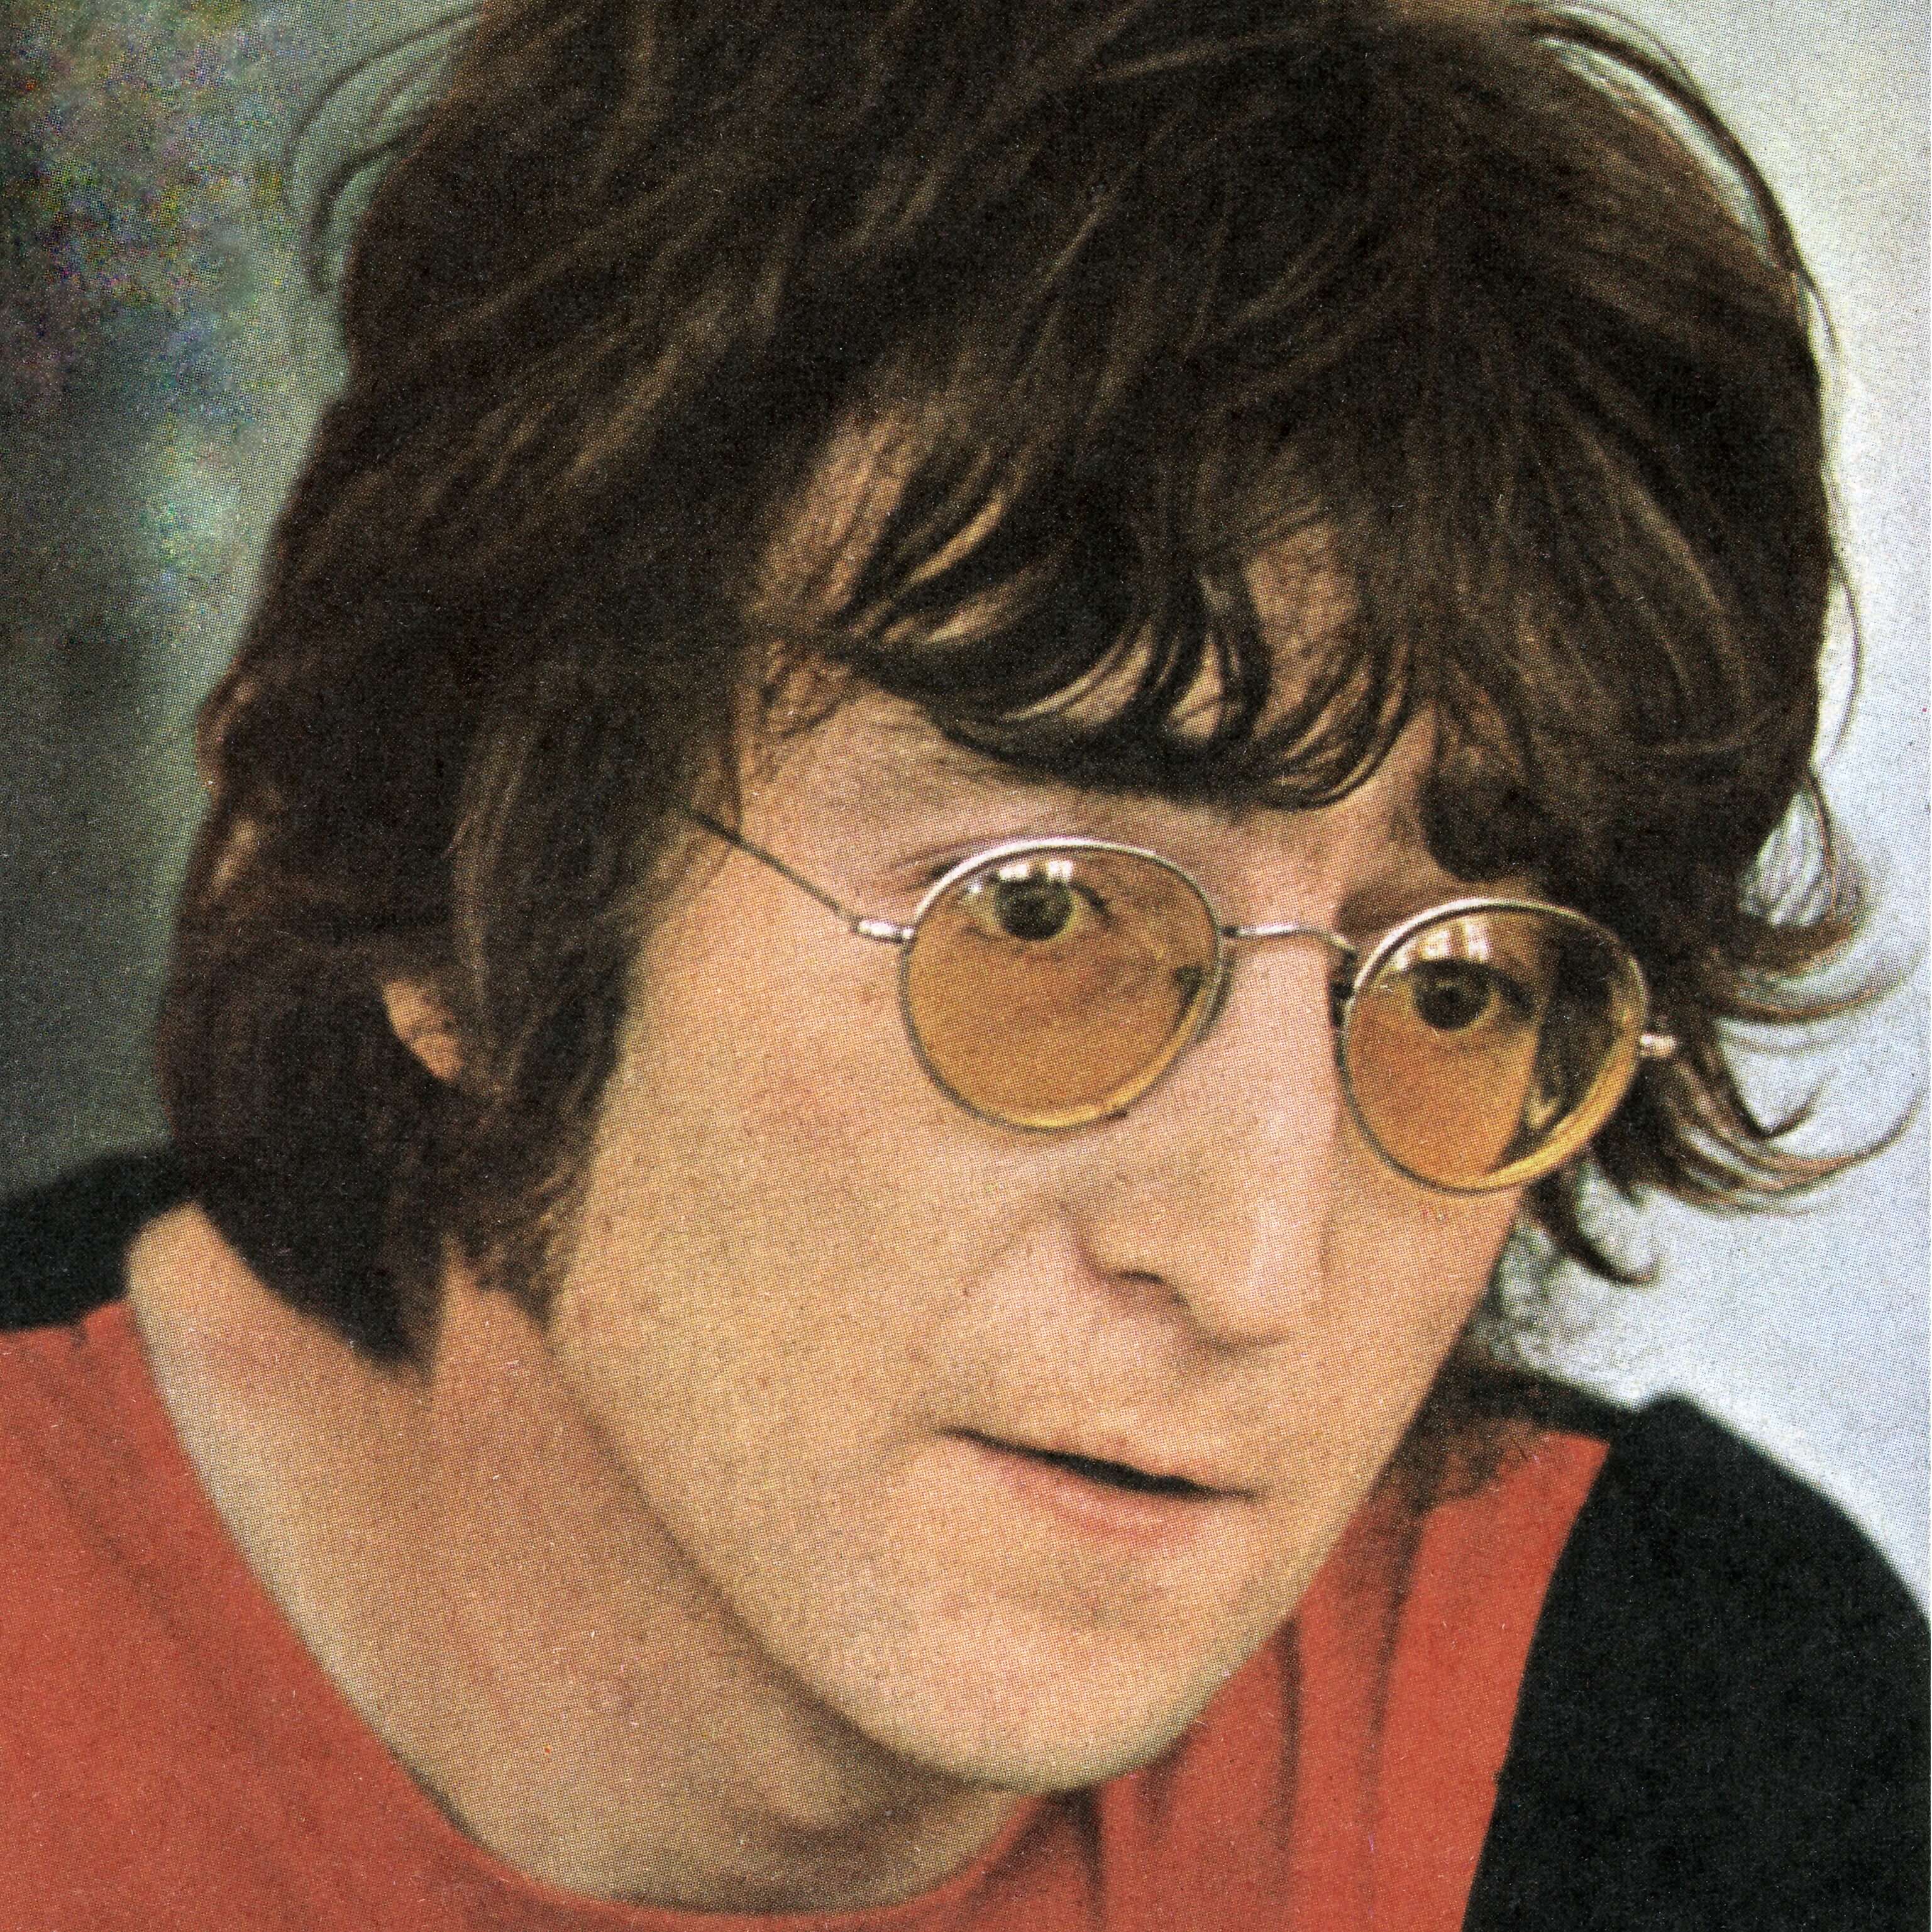 John Lennon Imagine 4 